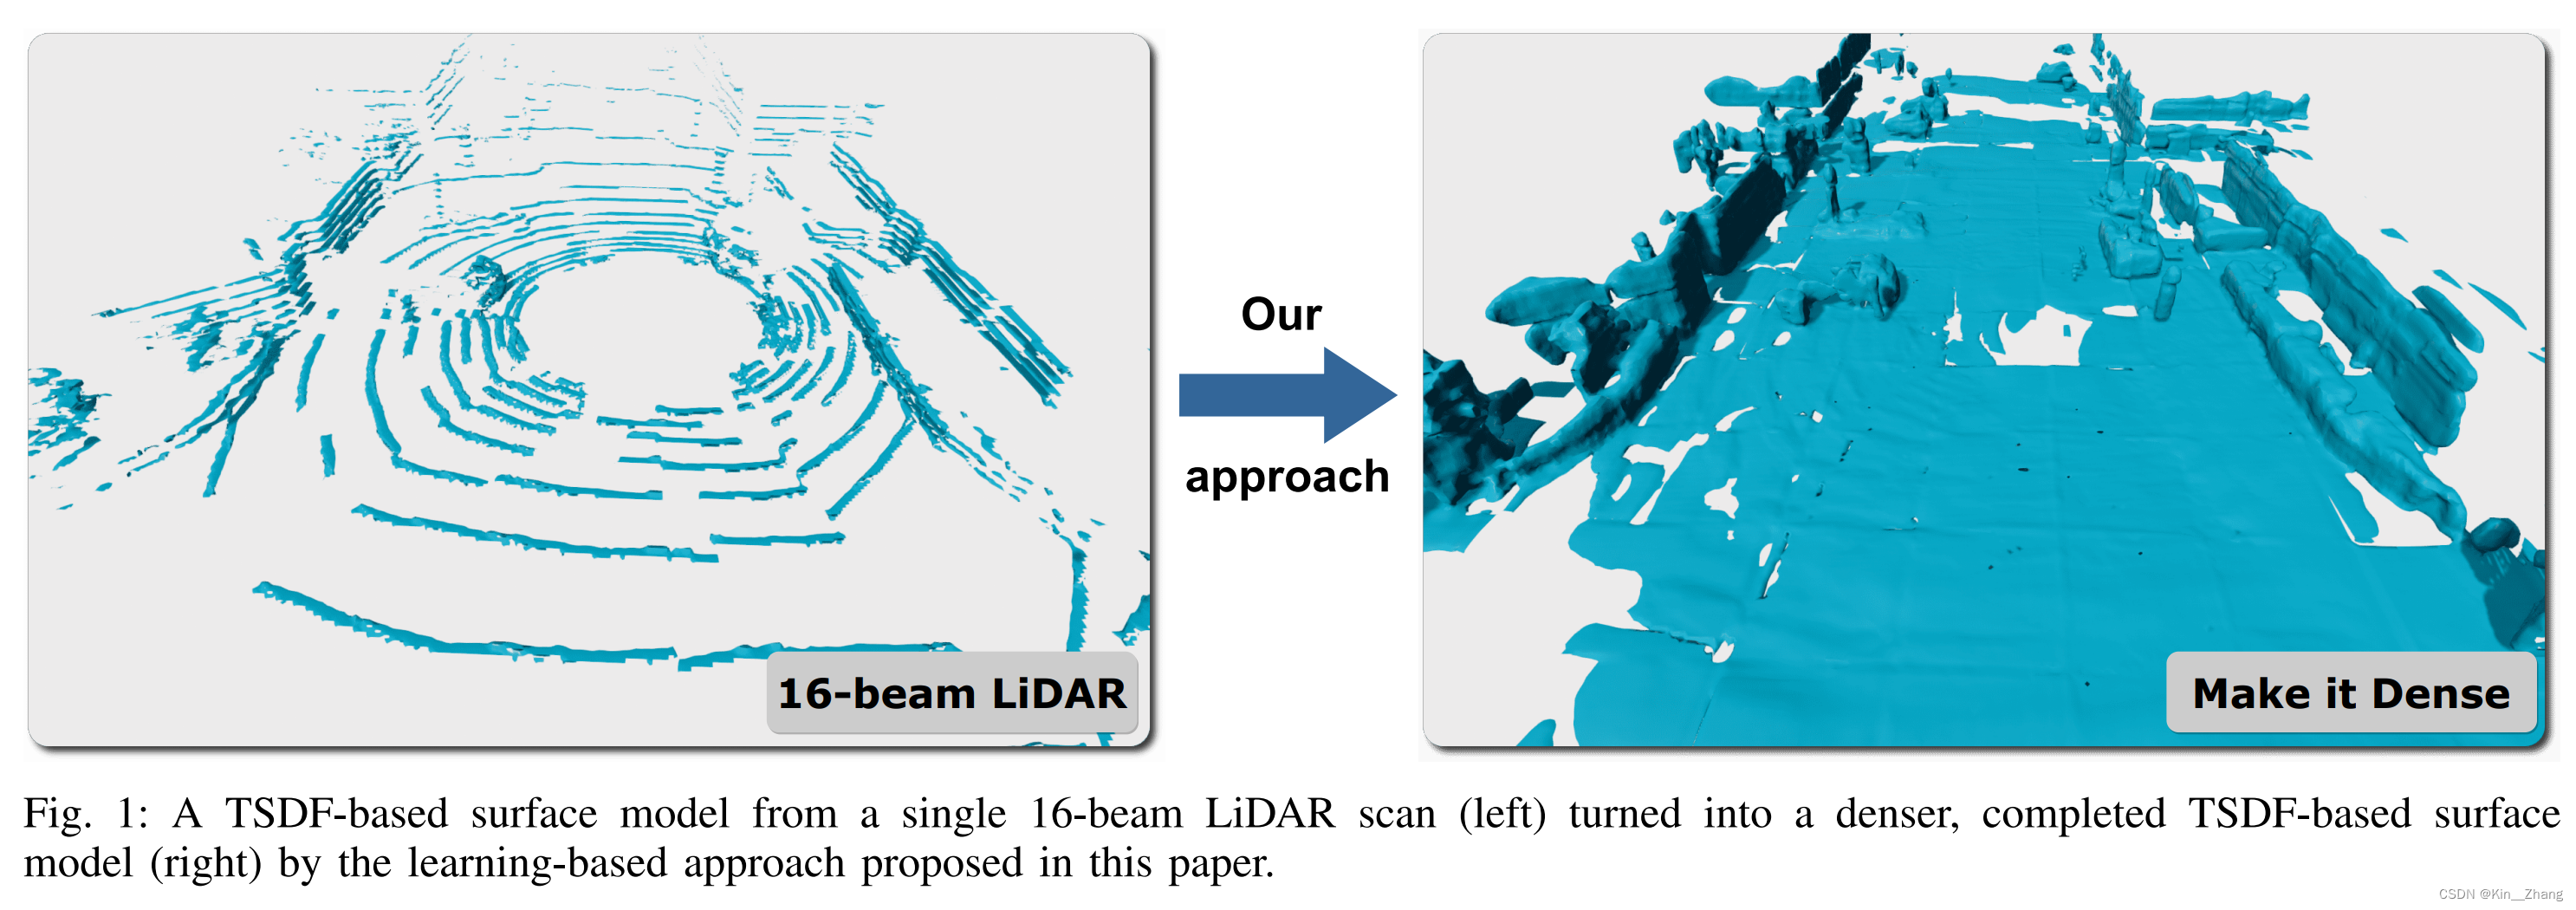 【论文阅读】RAL2022: Make it Dense: Self-Supervised Geometric Scan Completion of Sparse 3D LiDAR Scans in Large Outdoor Environments